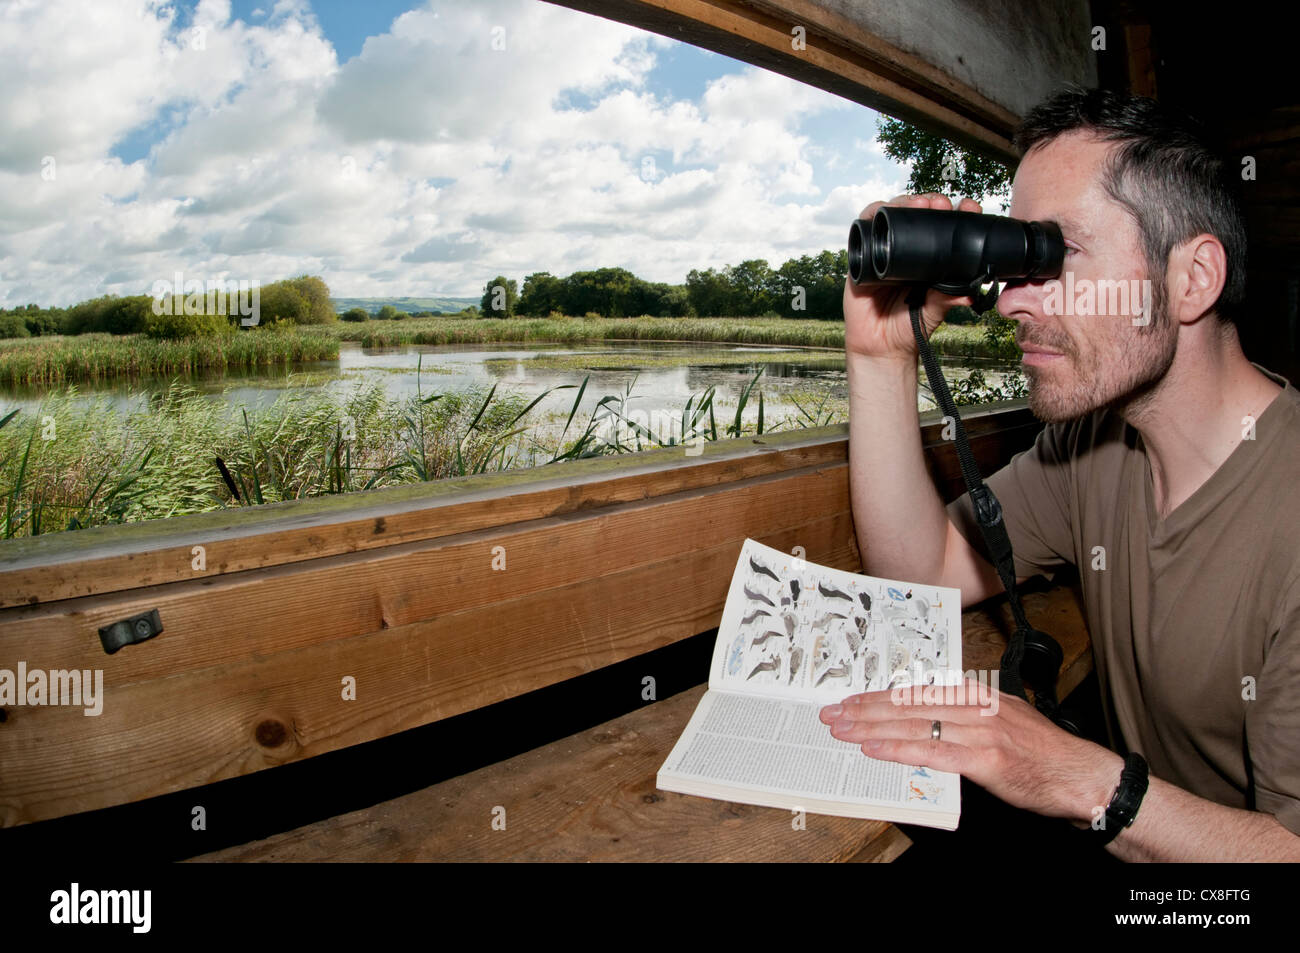 Vogelbeobachter spähte durch Fernglas und verwenden ein Vogelbuch Identifikation von innerhalb einer Öffentlichkeit zu verstecken, an einem sonnigen Morgen Stockfoto